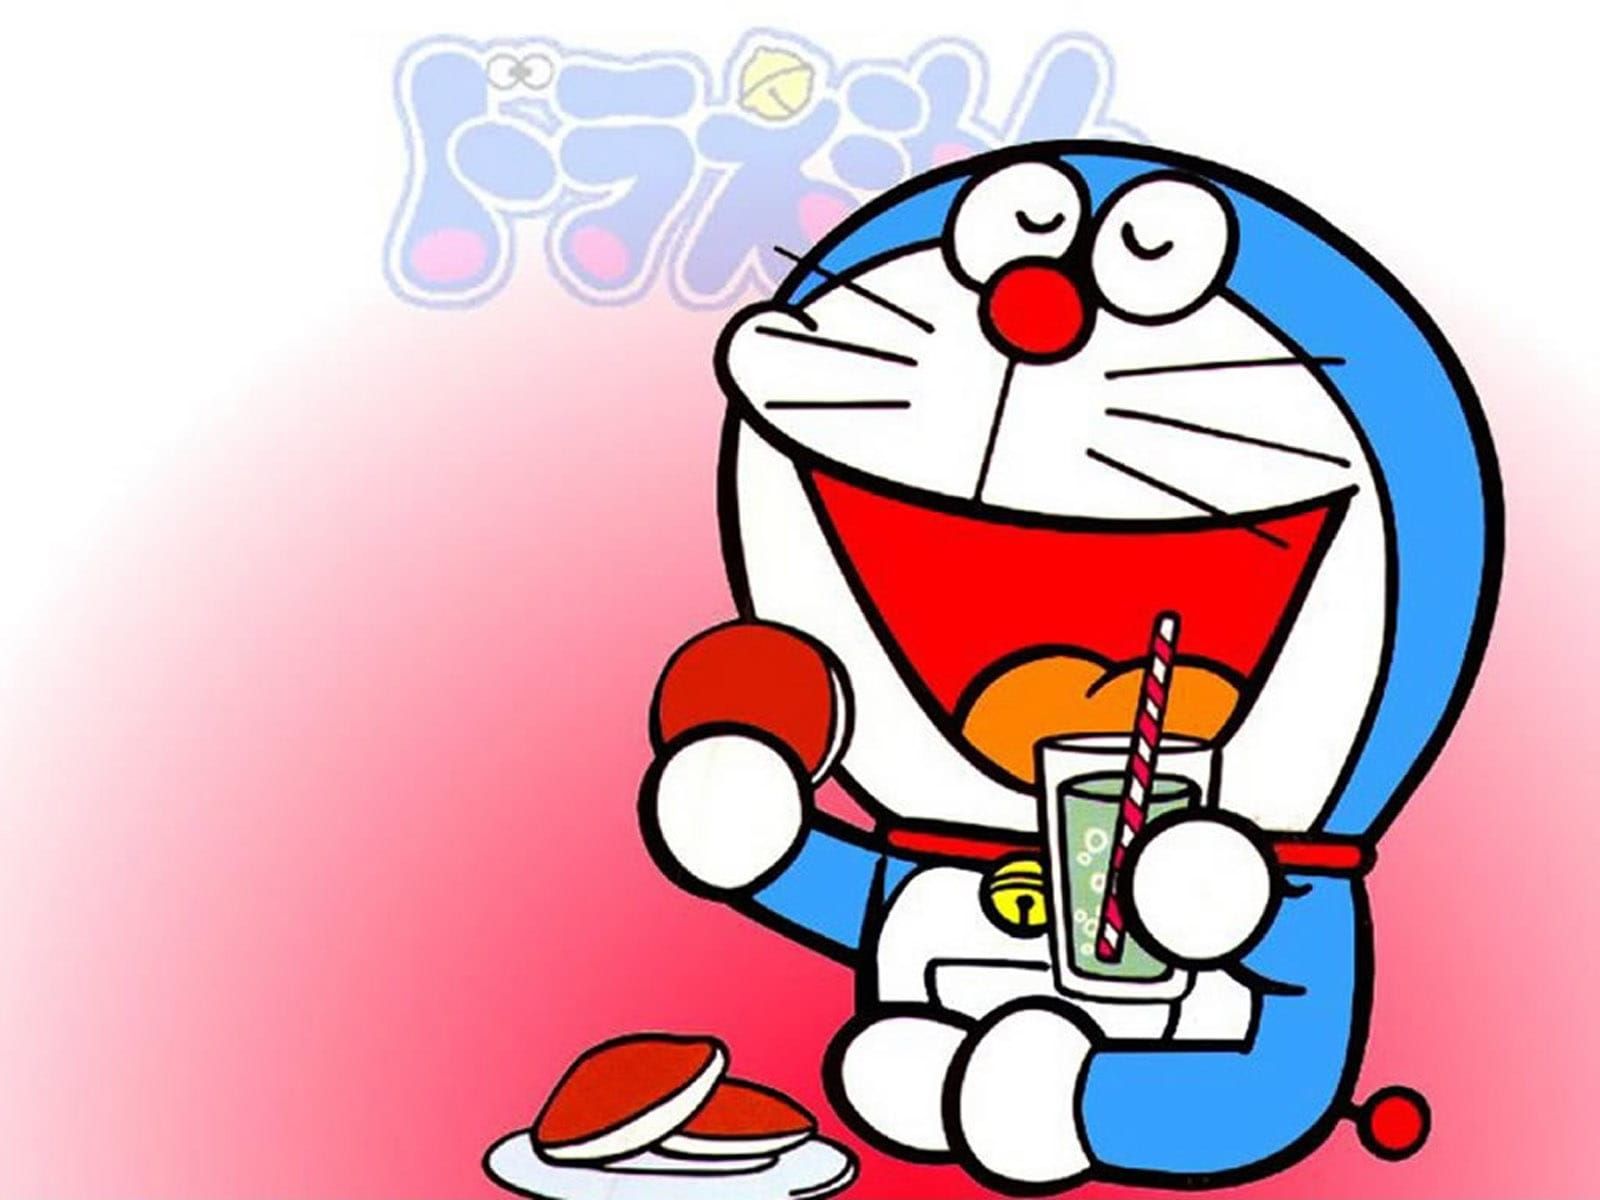 Những điều vô lý trong Doremon sẽ khiến bạn bật cười nạp năng lượng trẻ trung! Với những câu chuyện lập dị và thú vị, bạn sẽ được khám phá những bí ẩn kỳ diệu mà chỉ Doraemon mới có trong tay. Xem hình ảnh và tìm hiểu tại sao chú mèo-robot đã trở thành niềm tự hào của văn hóa giải trí Nhật Bản.